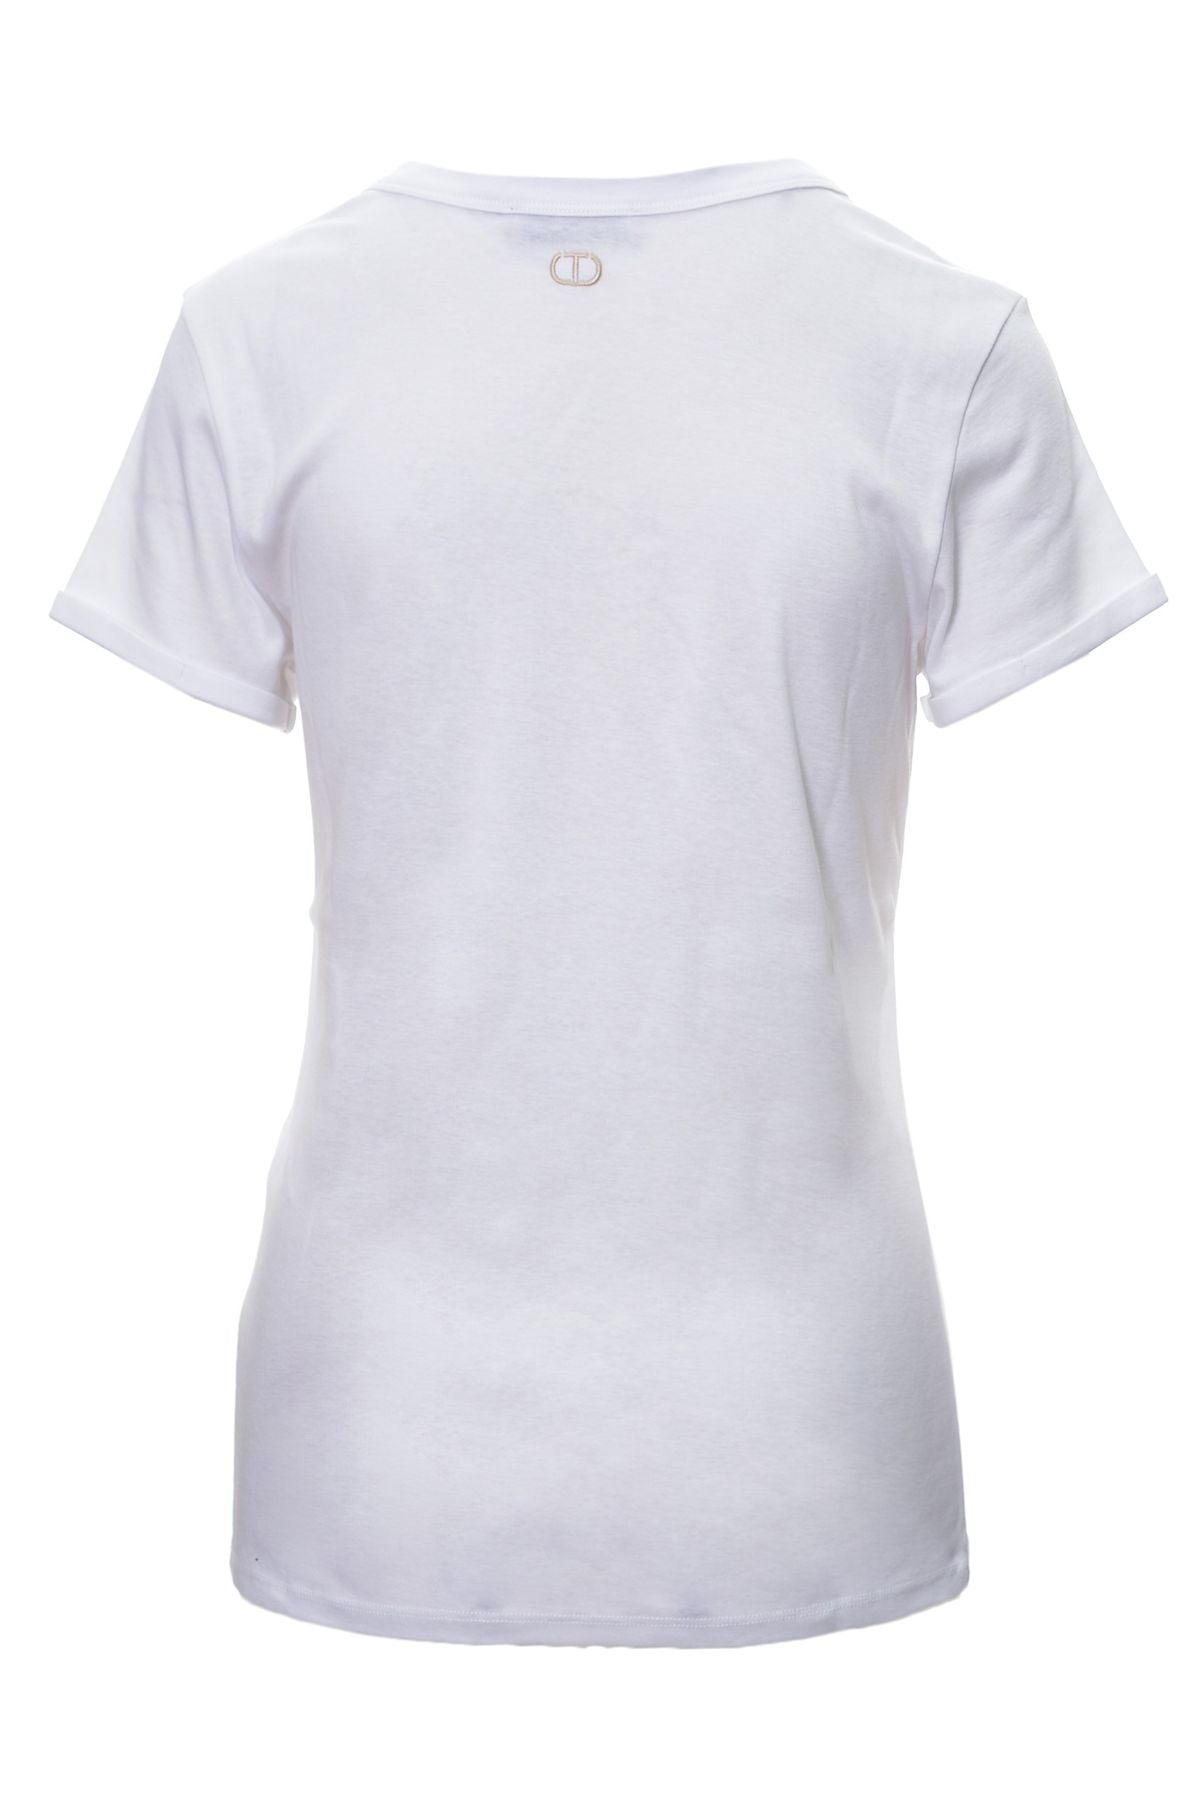 TWIN-SET Camiseta Algodón Primavera/Verano